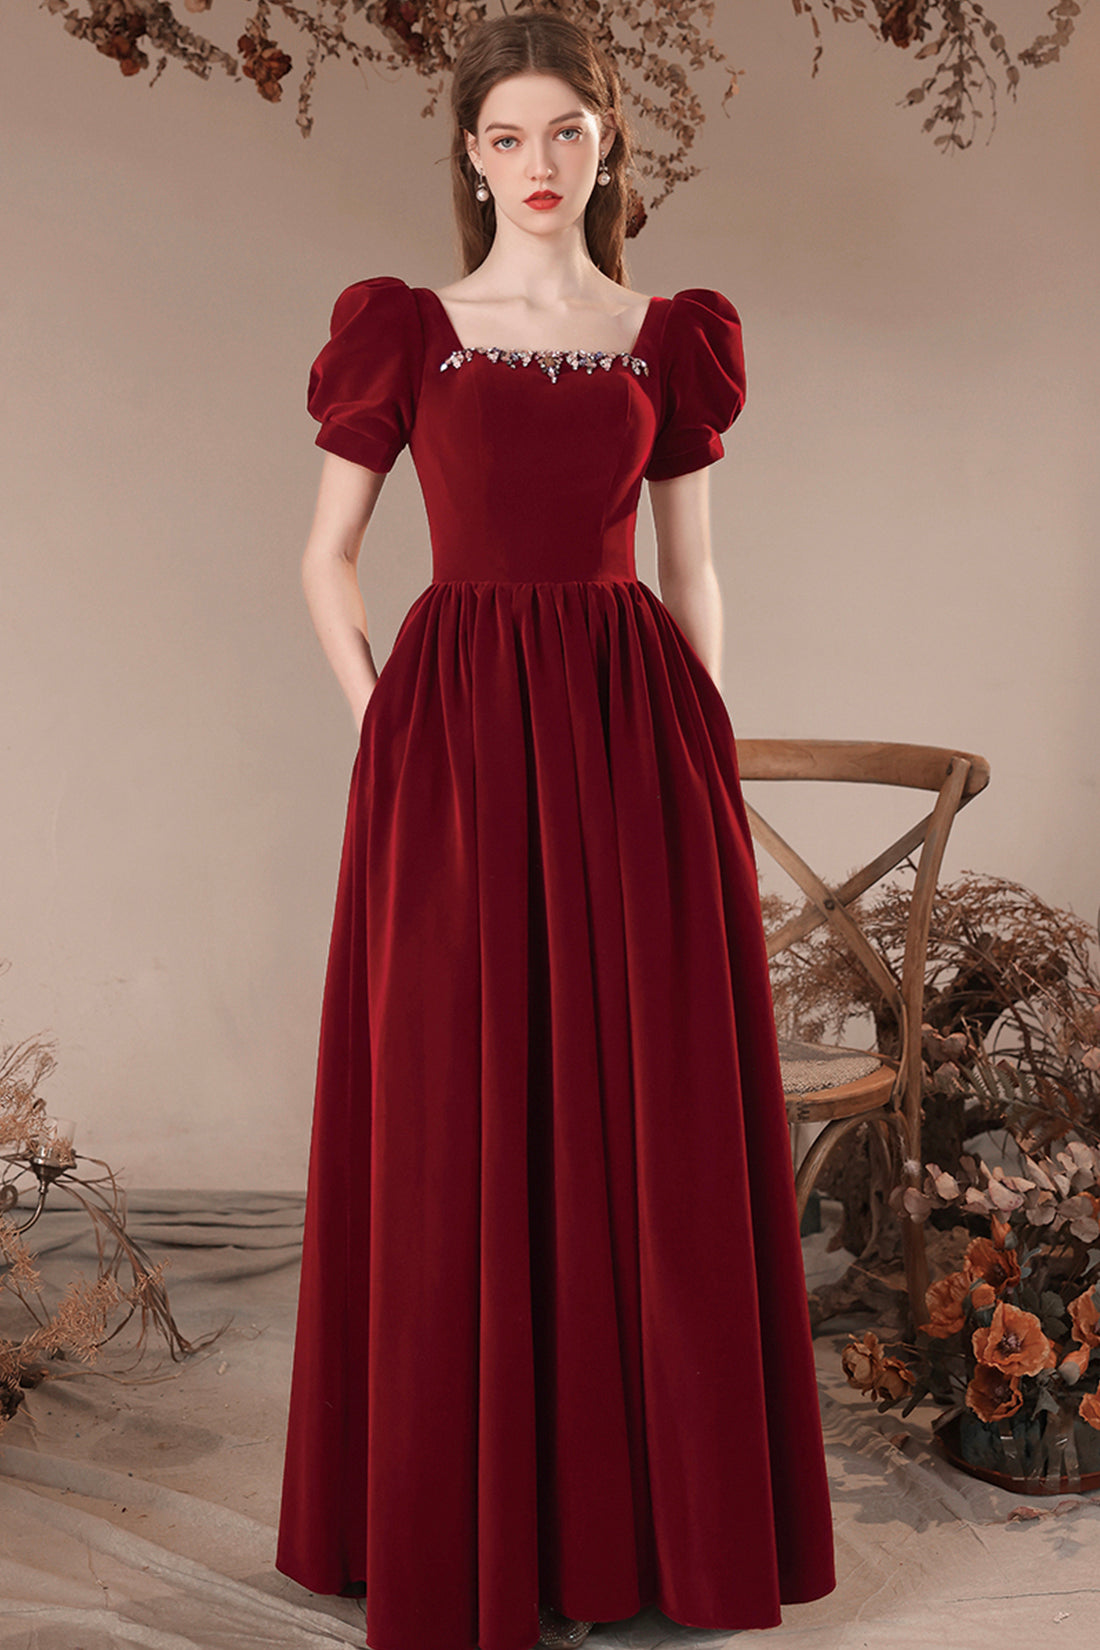 Burgundy Velvet Long Prom Dress, Burgundy Short Sleeve Evening Dress